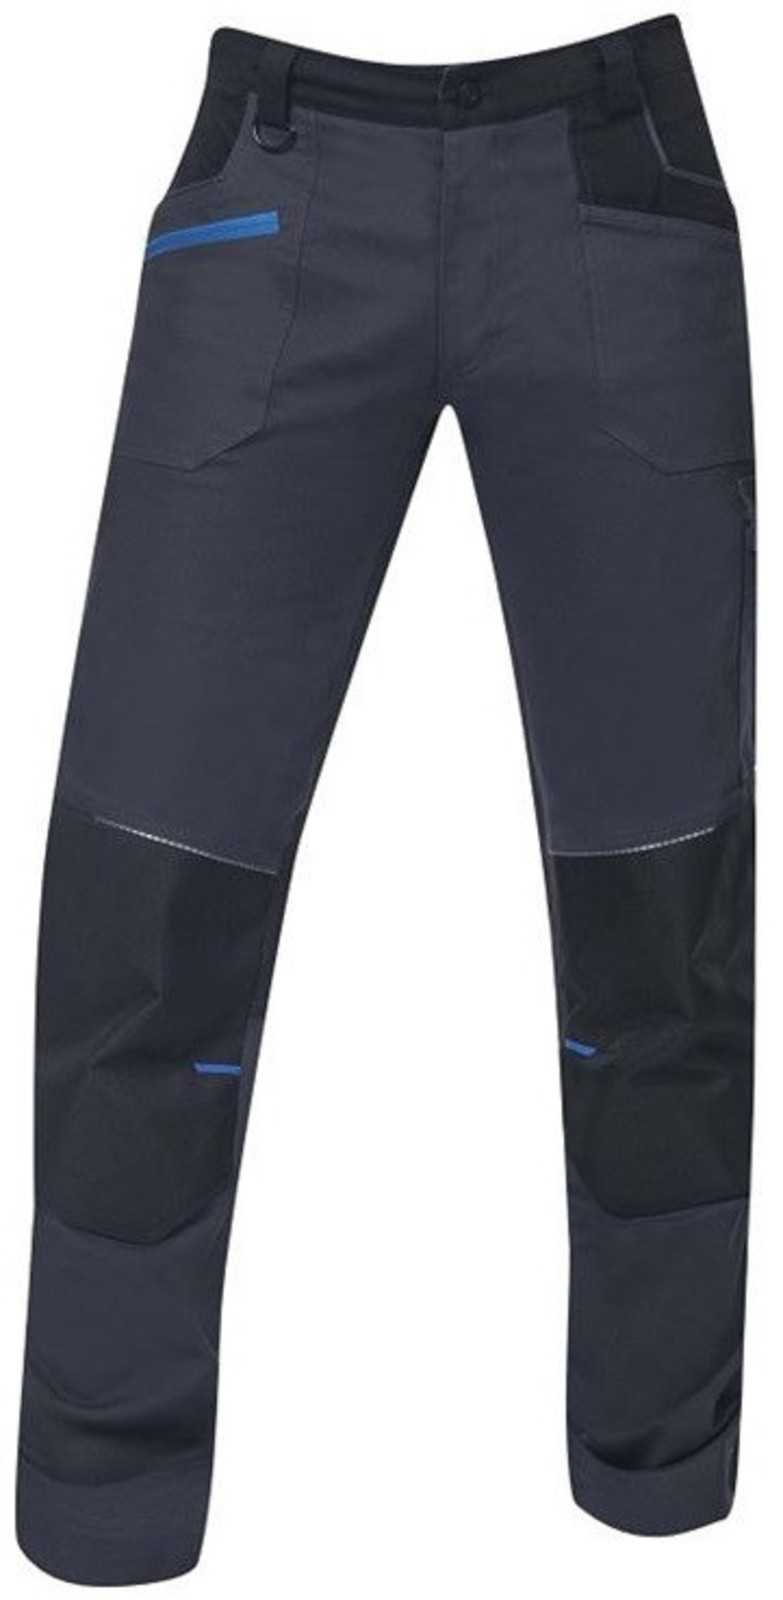 Pánske strečové montérkové nohavice Ardon 4Xstretch - veľkosť: 60, farba: tmavo šedá